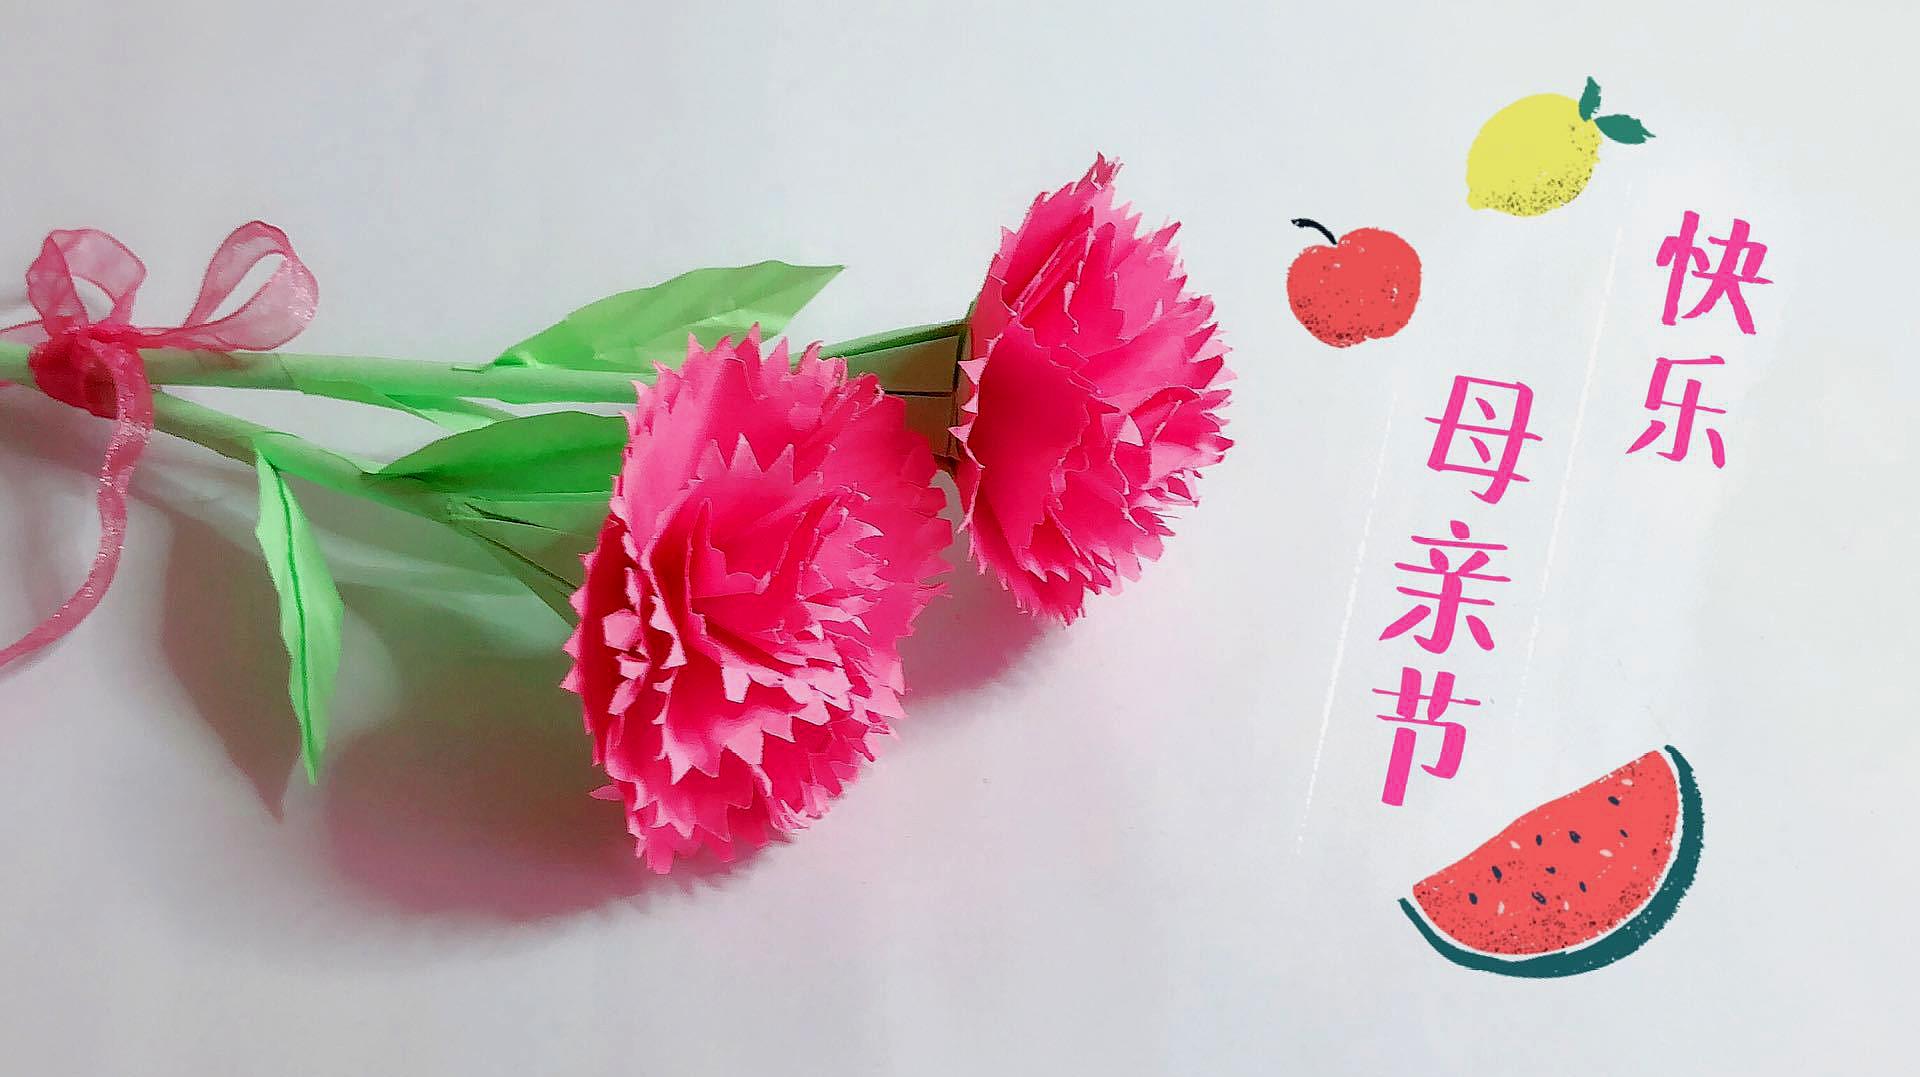 折纸教程:母亲节了,折一枝康乃馨送给妈妈吧!